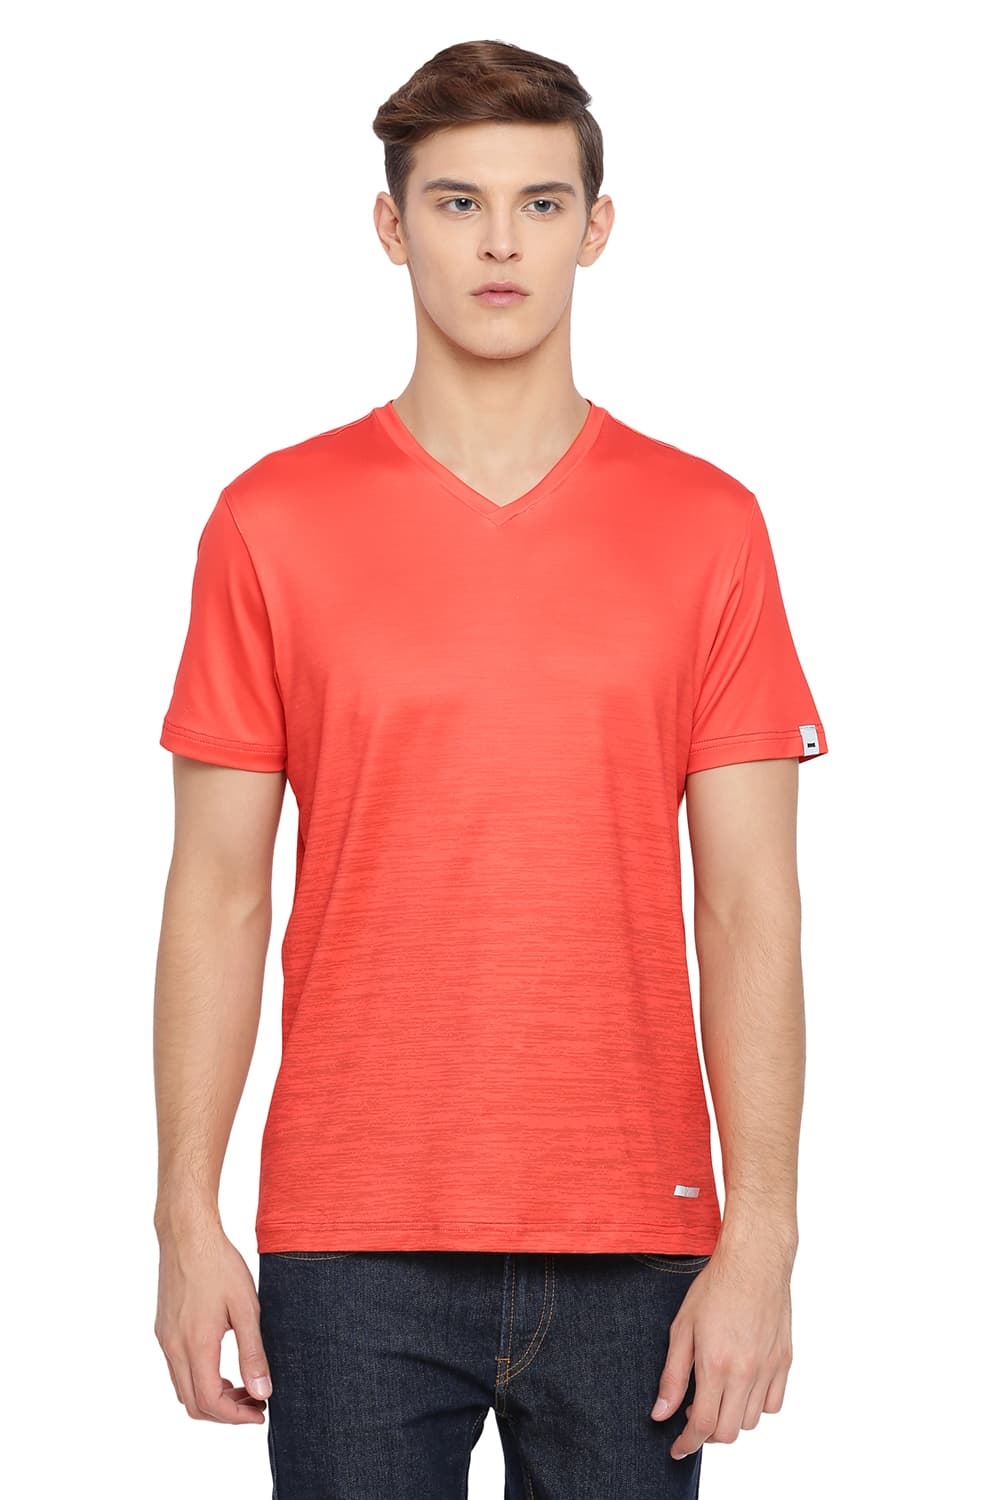 BASICS | Basics Muscle Fit Flame Orange V Neck T Shirt